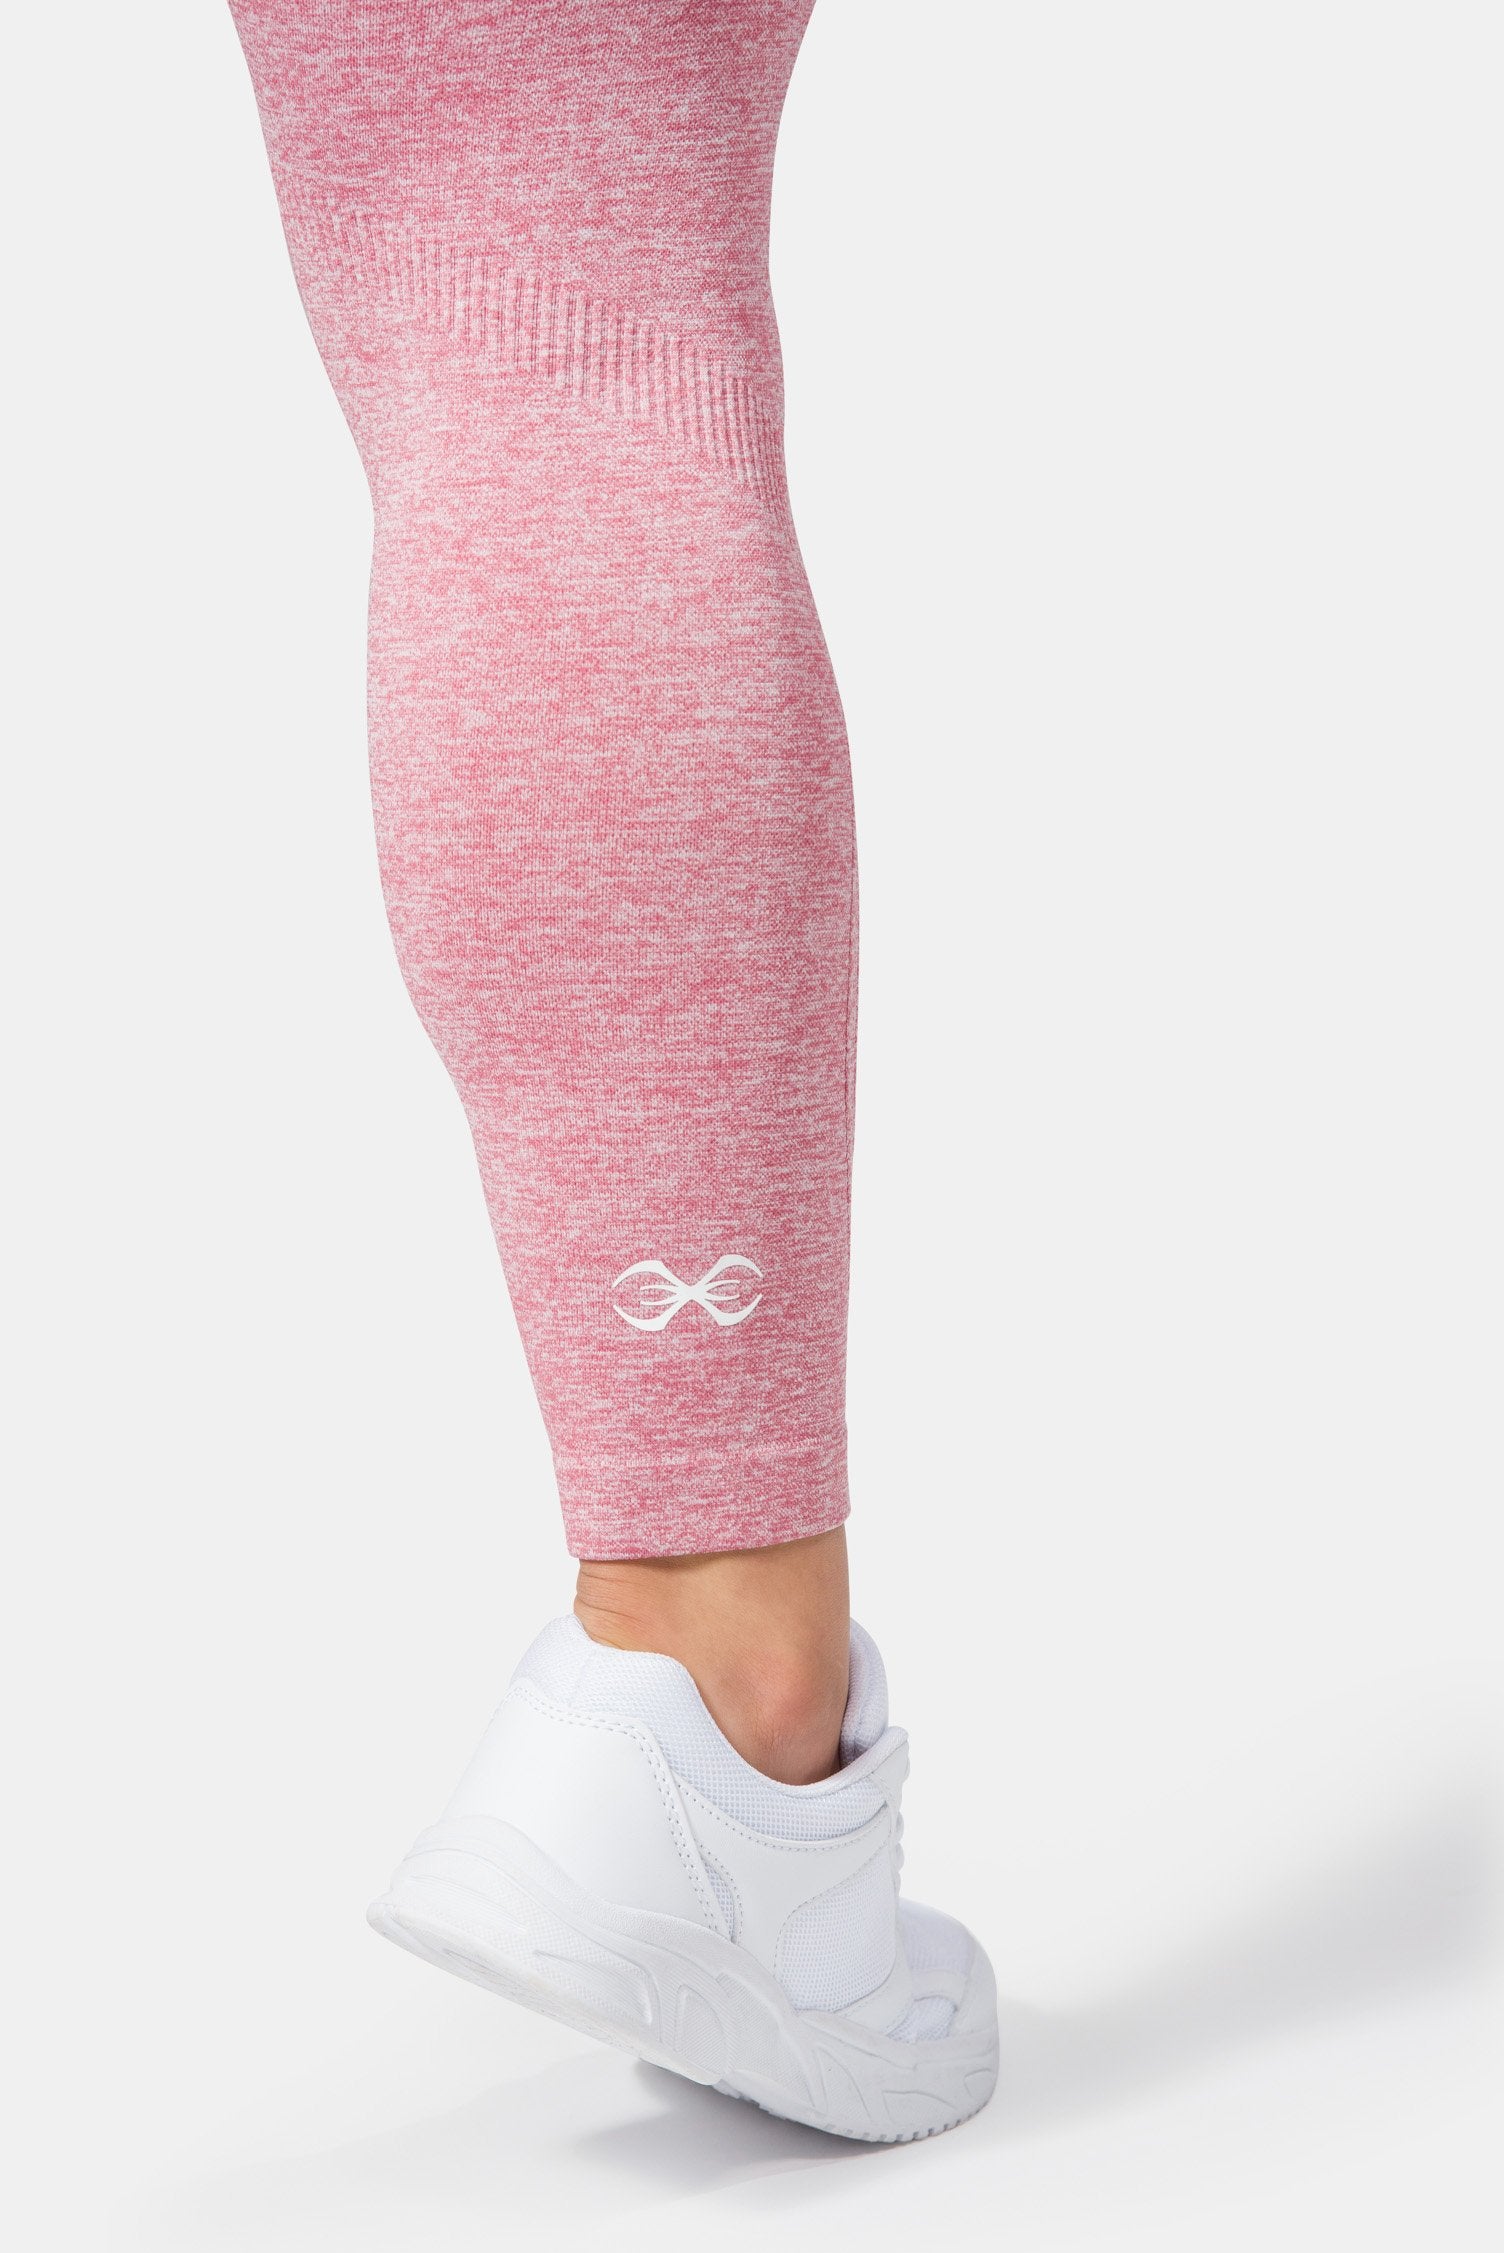 Emberly Leggings Animal Pink, XXS-XL